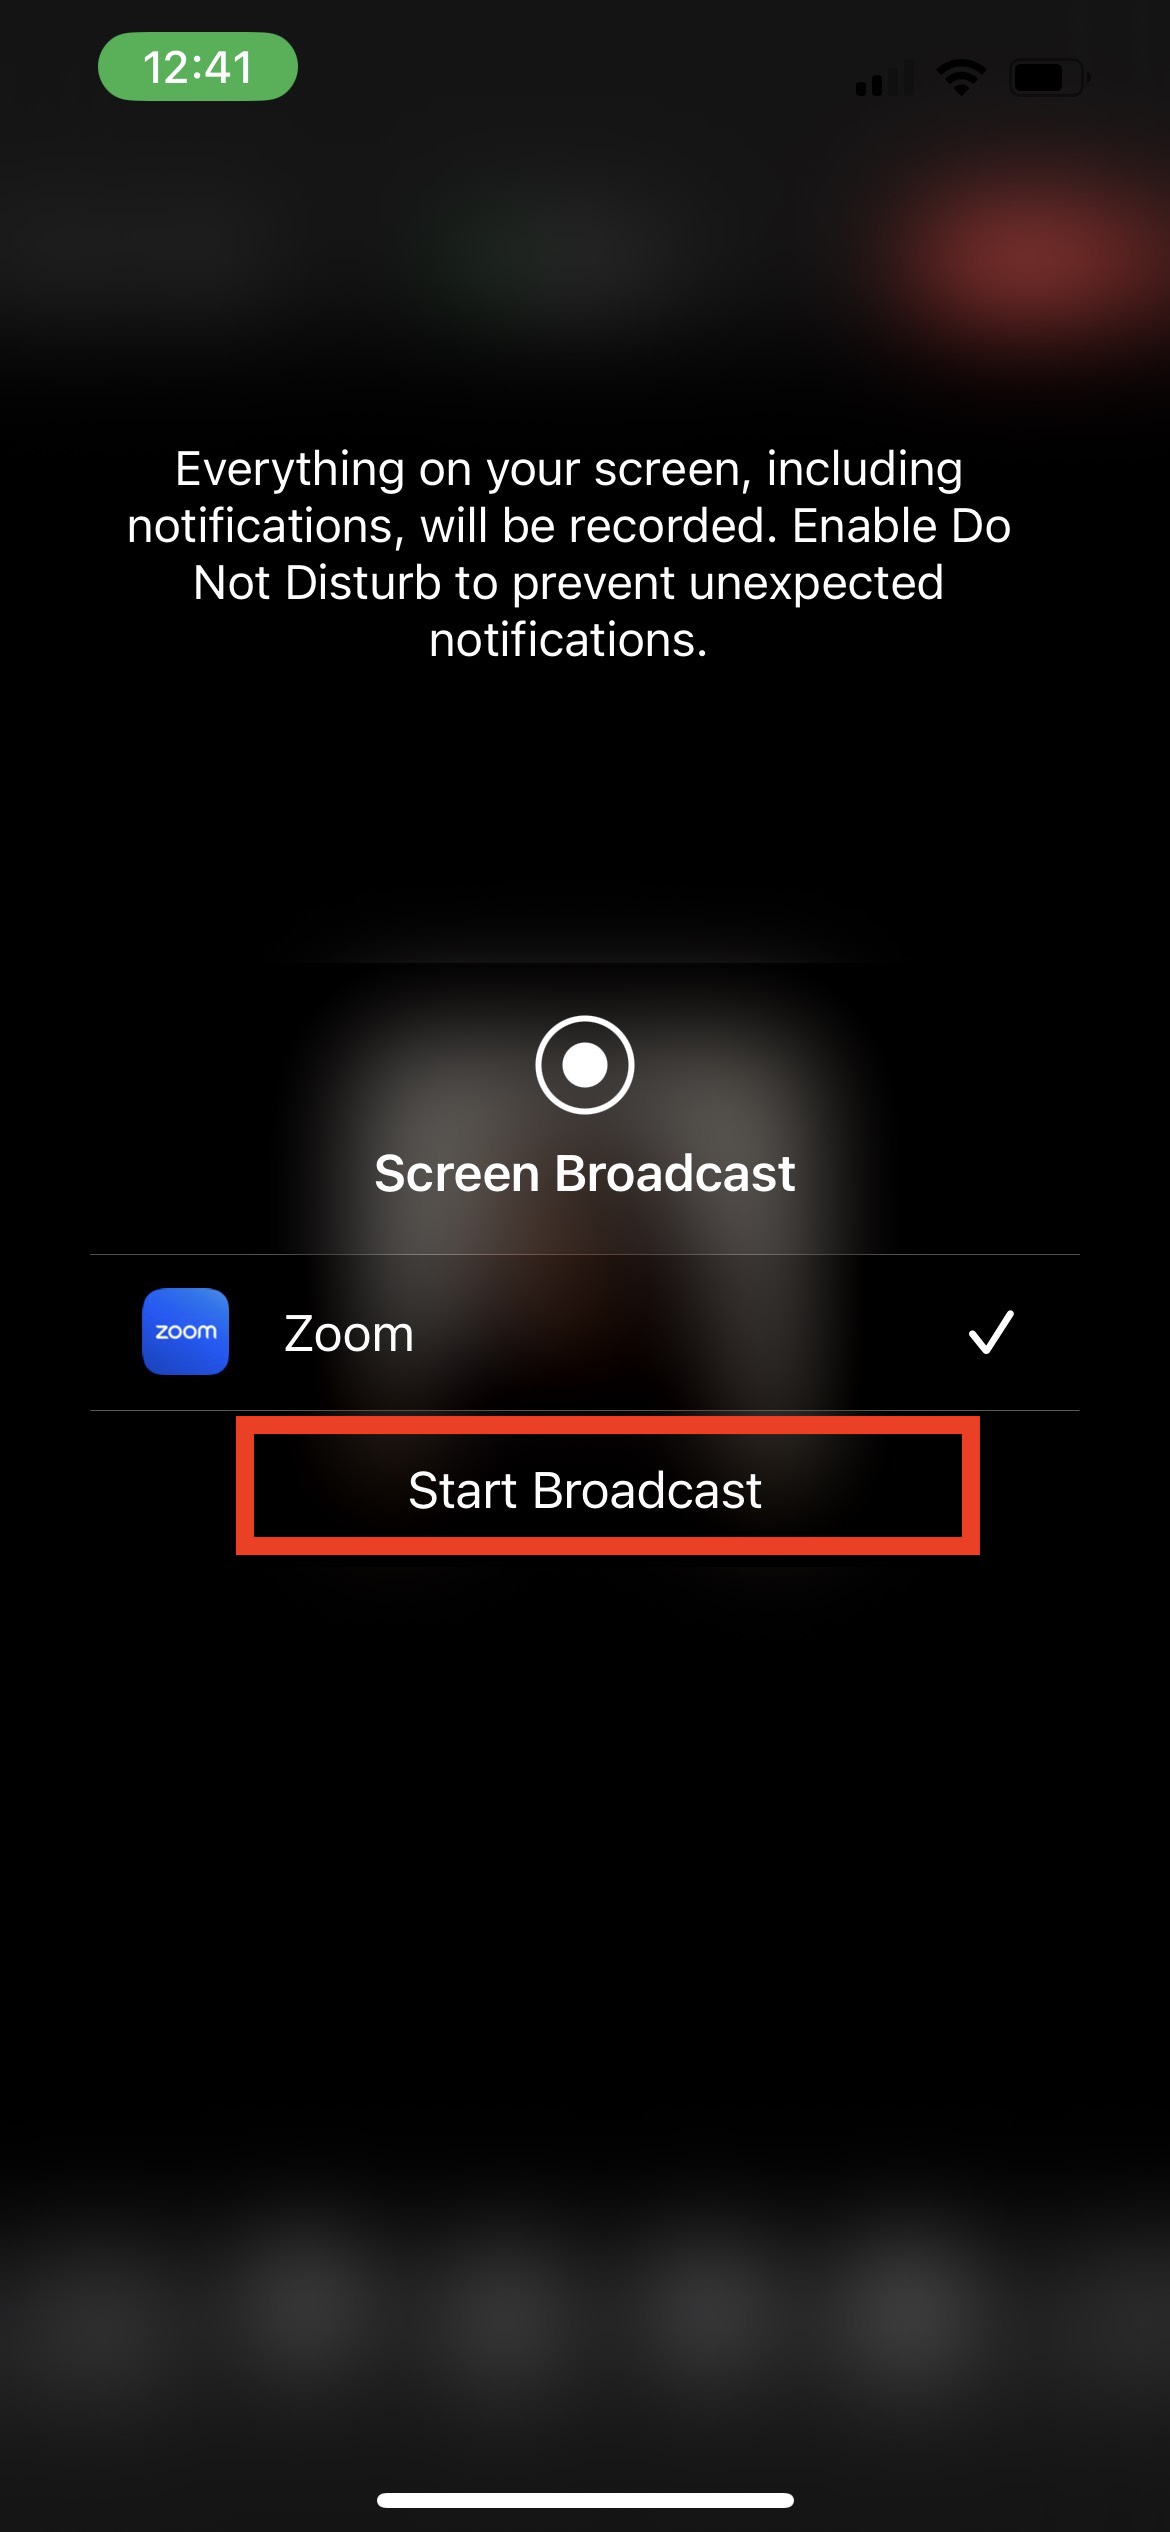 Zoom_iOS_Start broadcast.jpeg